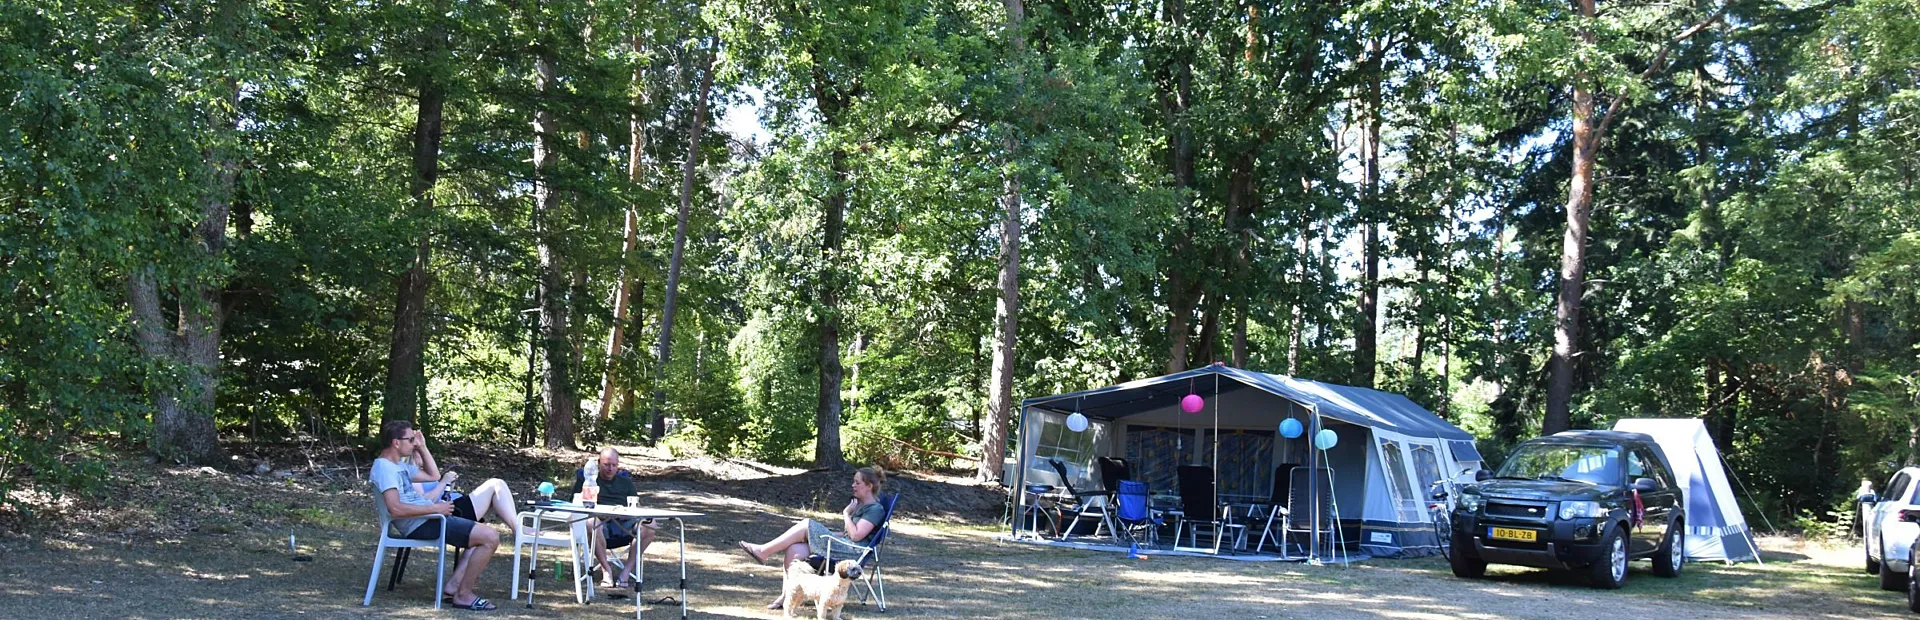 Camping met hond kampeerplaats Ommerhout 1